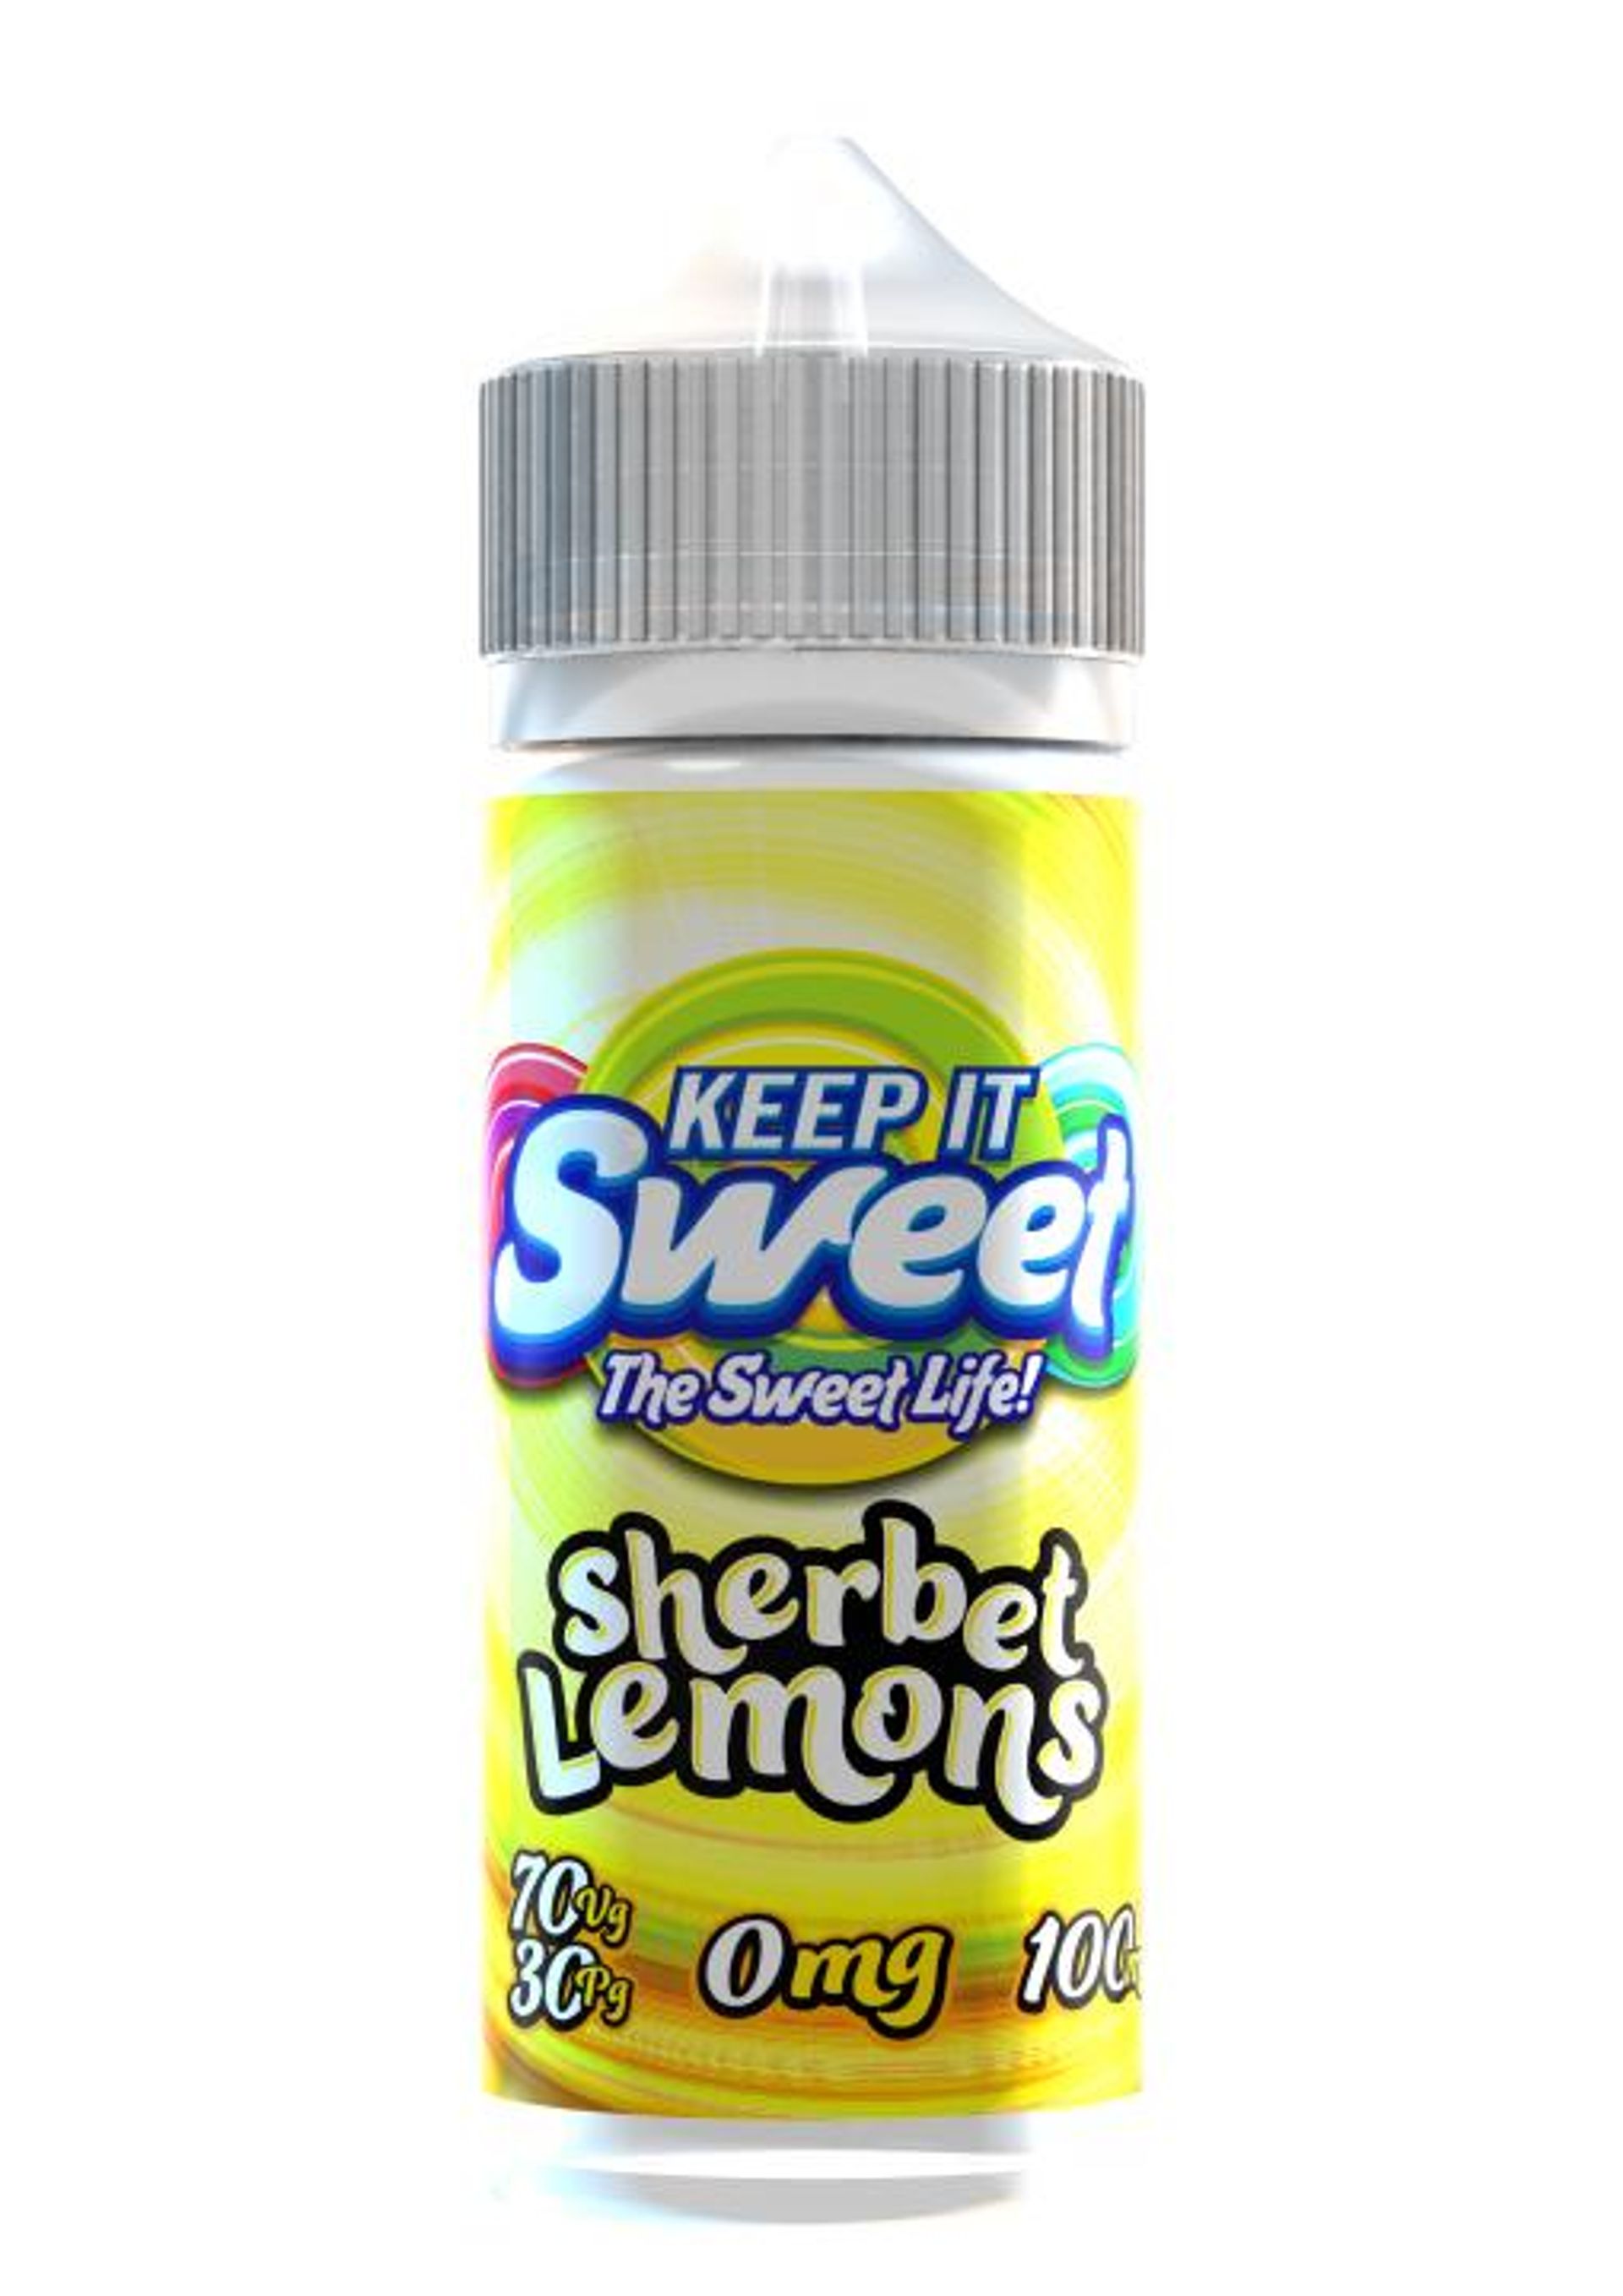 Image of Sweet Sherbet Lemons by Keep It Sweet